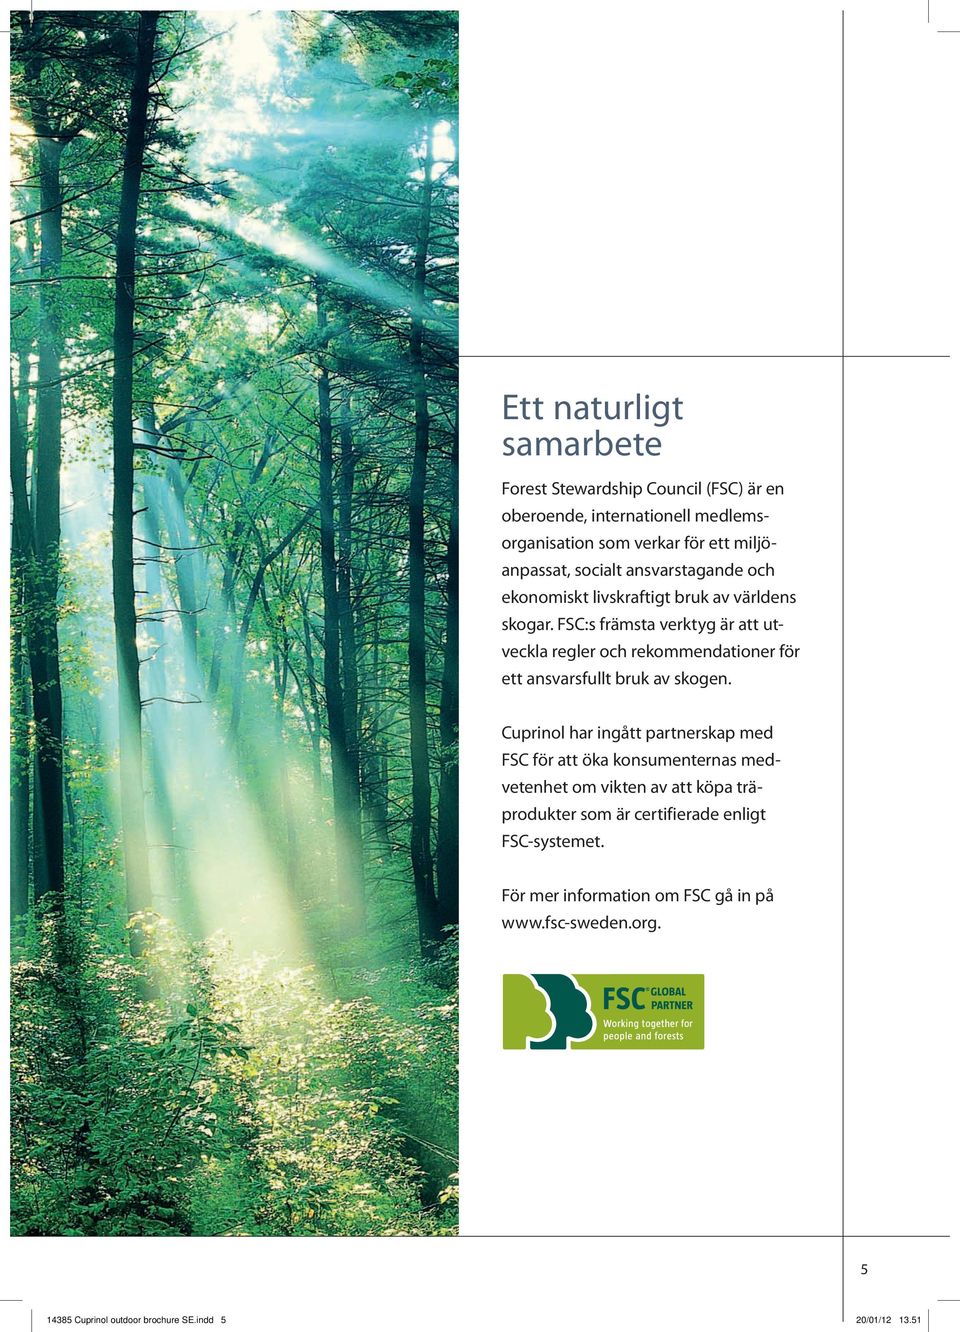 FSC:s främsta verktyg är att utveckla regler och rekommendationer för ett ansvarsfullt bruk av skogen.